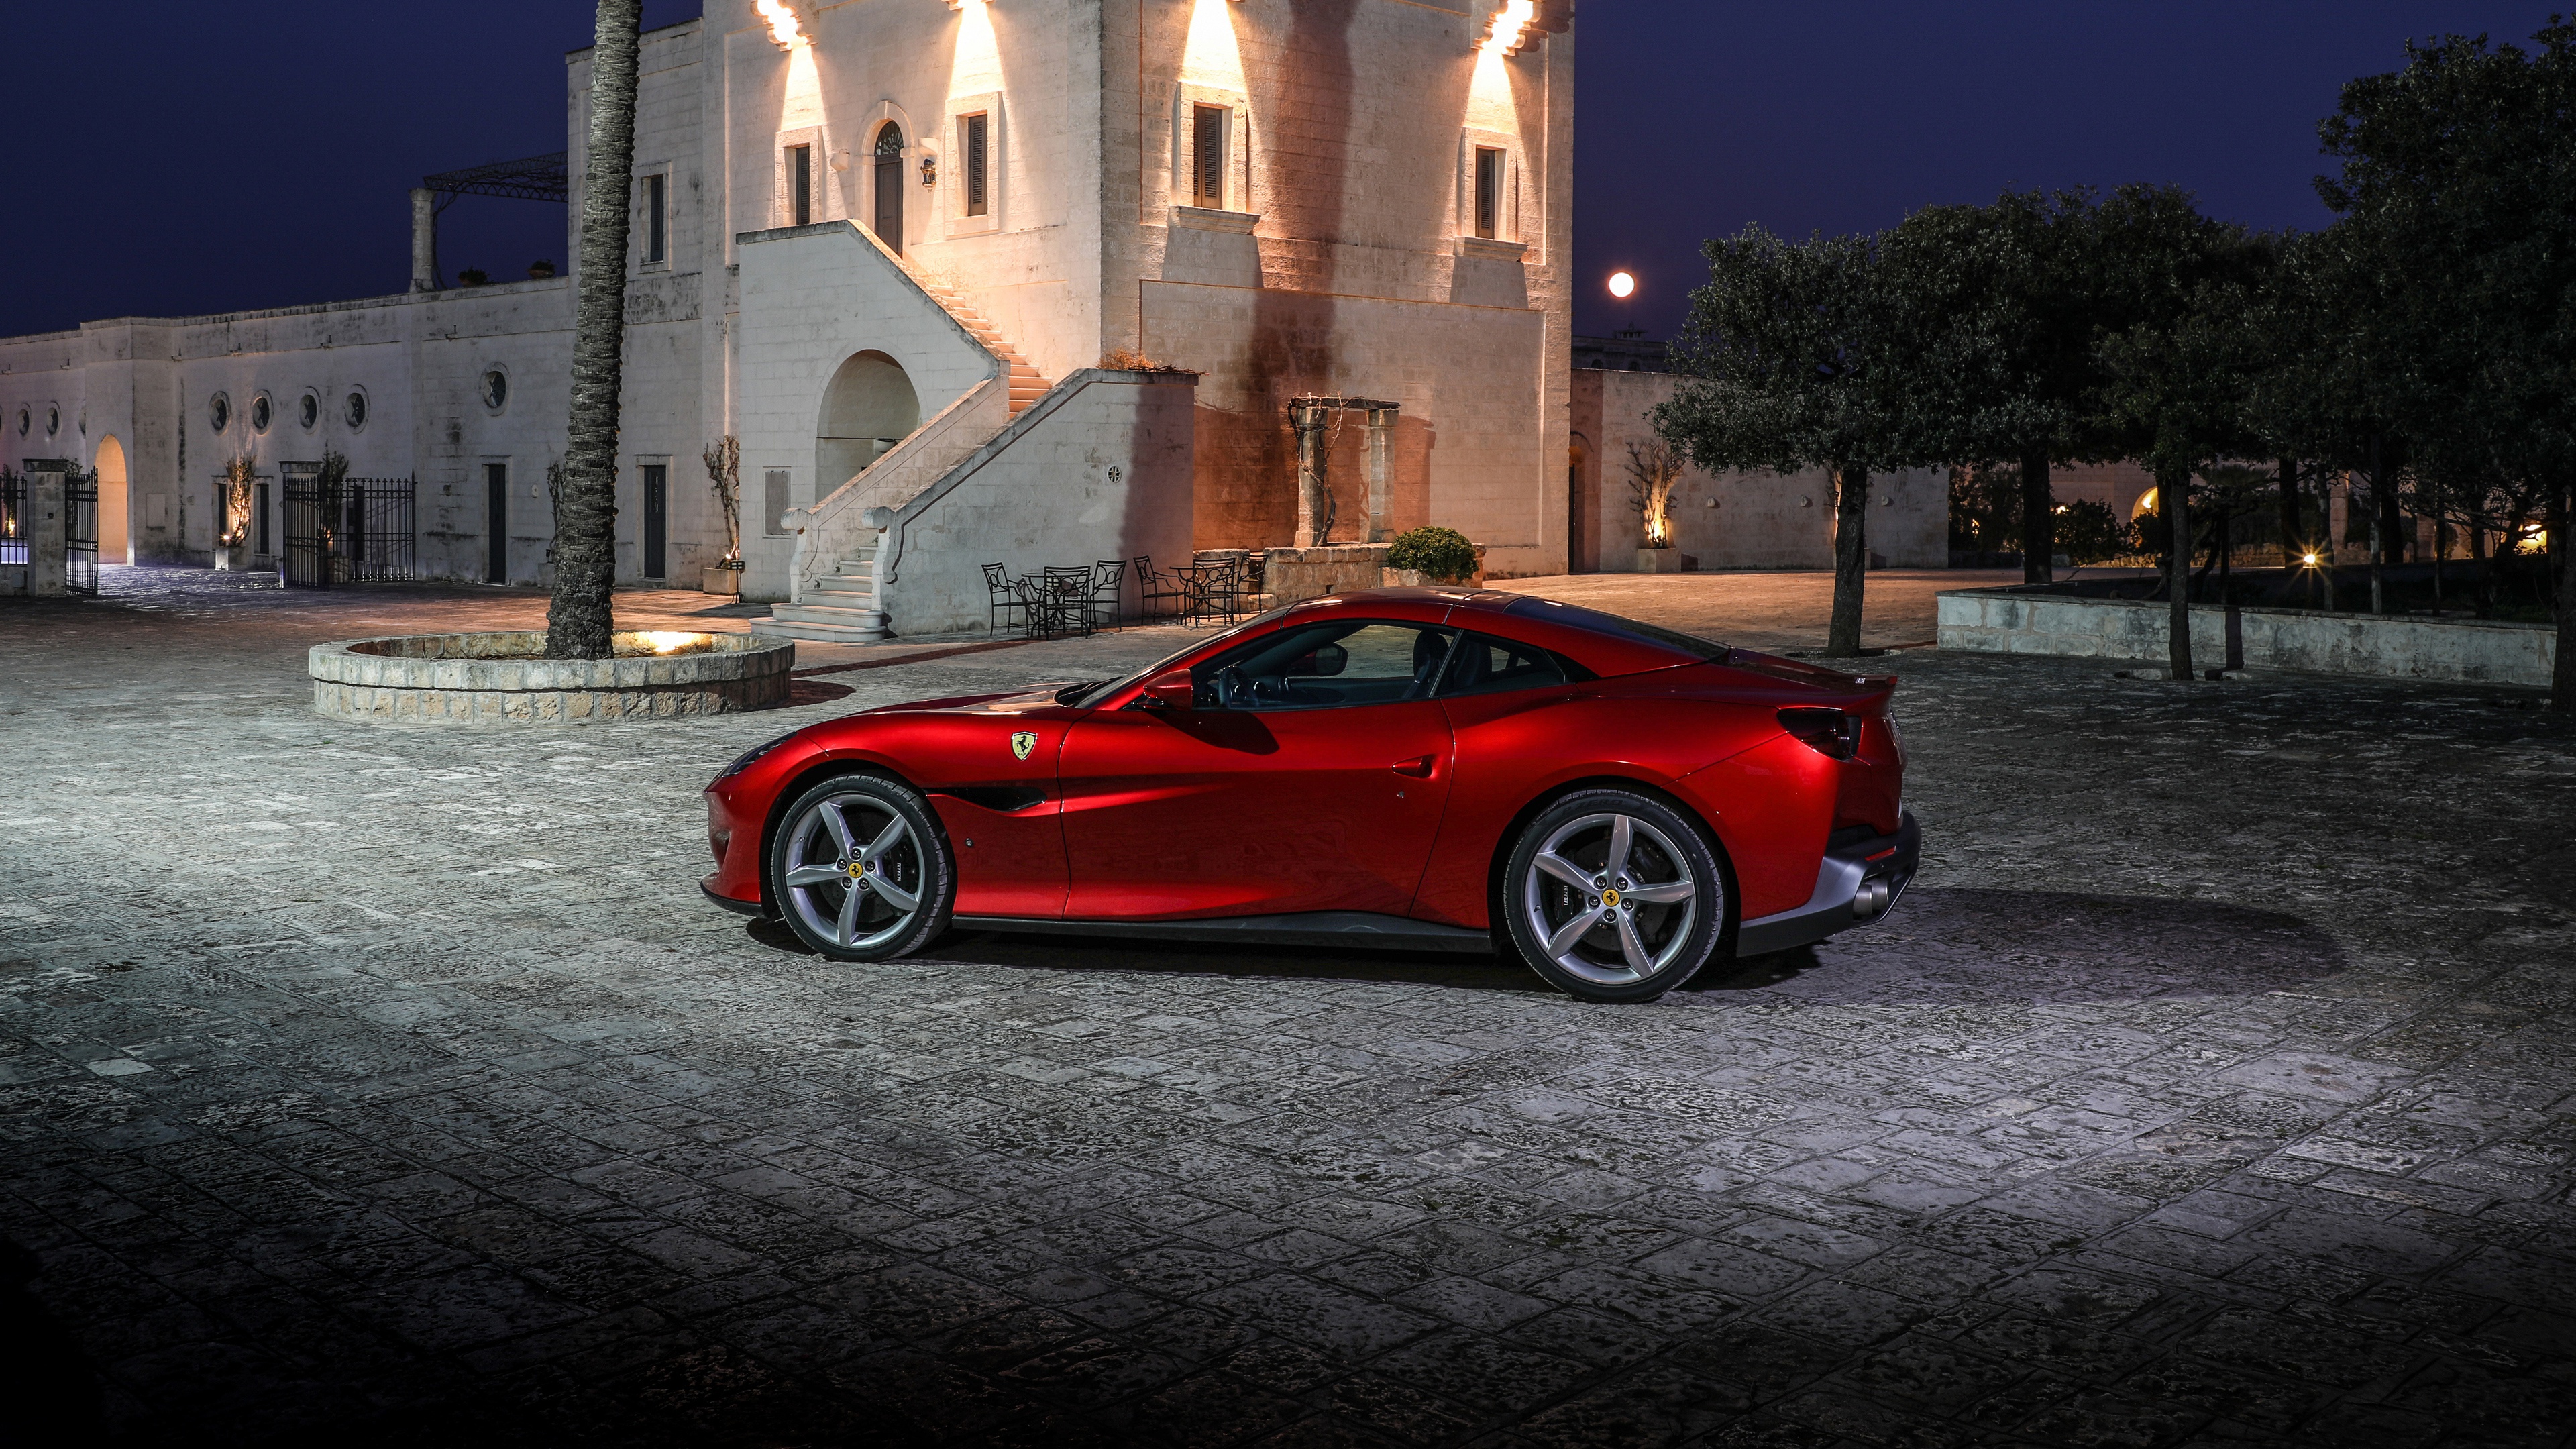 Télécharger des fonds d'écran Ferrari Porto Fino HD